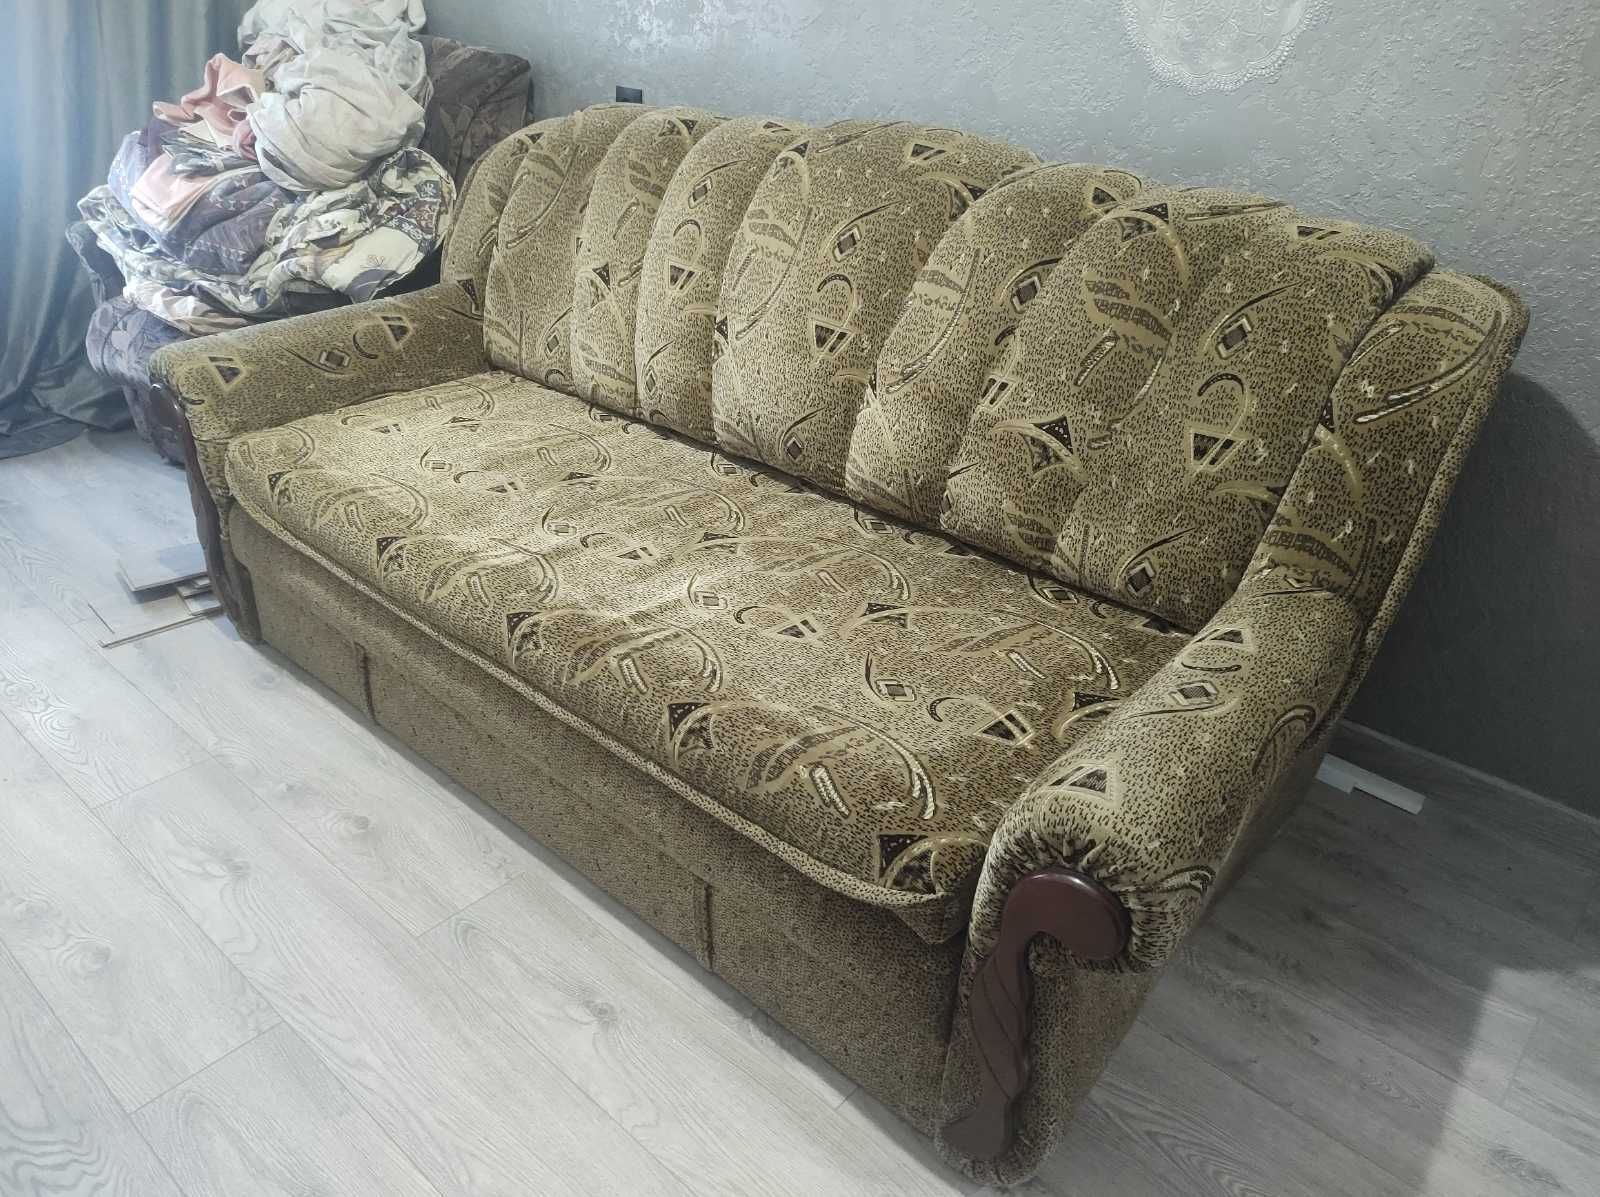 практически Новый диван в идеальном состоянии на ламелях Доставка.